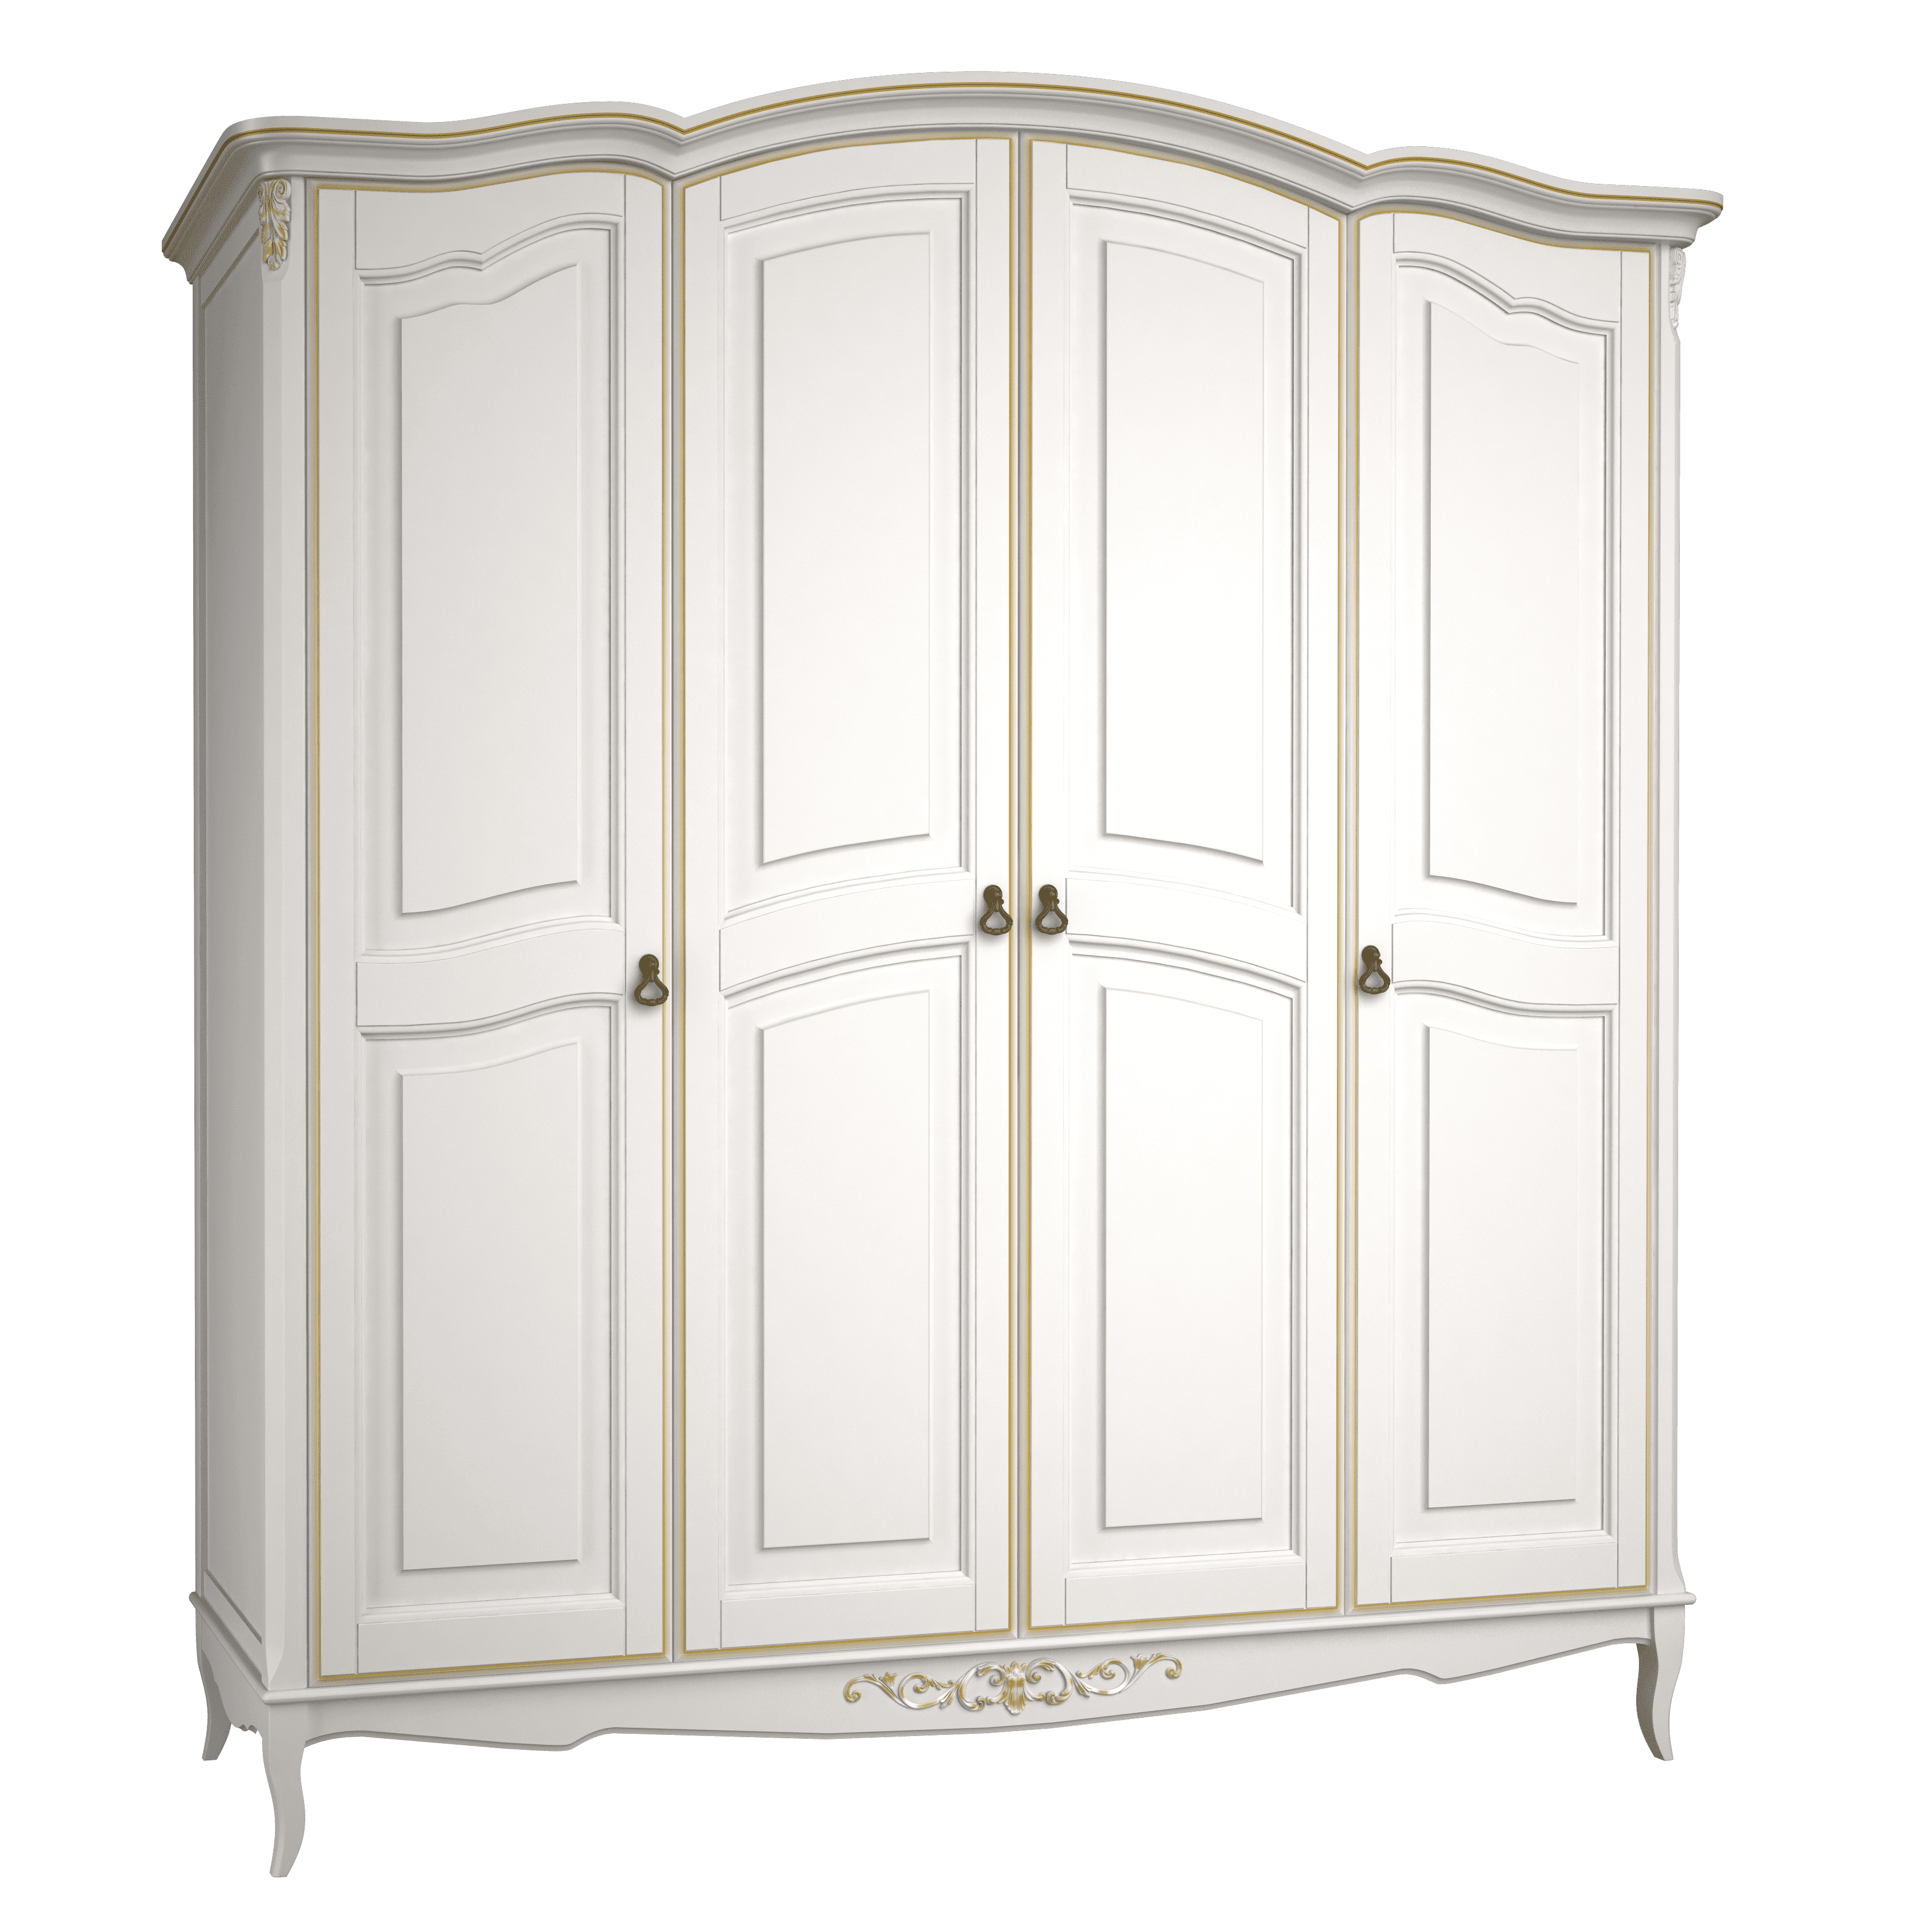 Шкаф платяной Aletan Provence, 4-х дверный, цвет: слоновая кость-золото (B804G)B804G